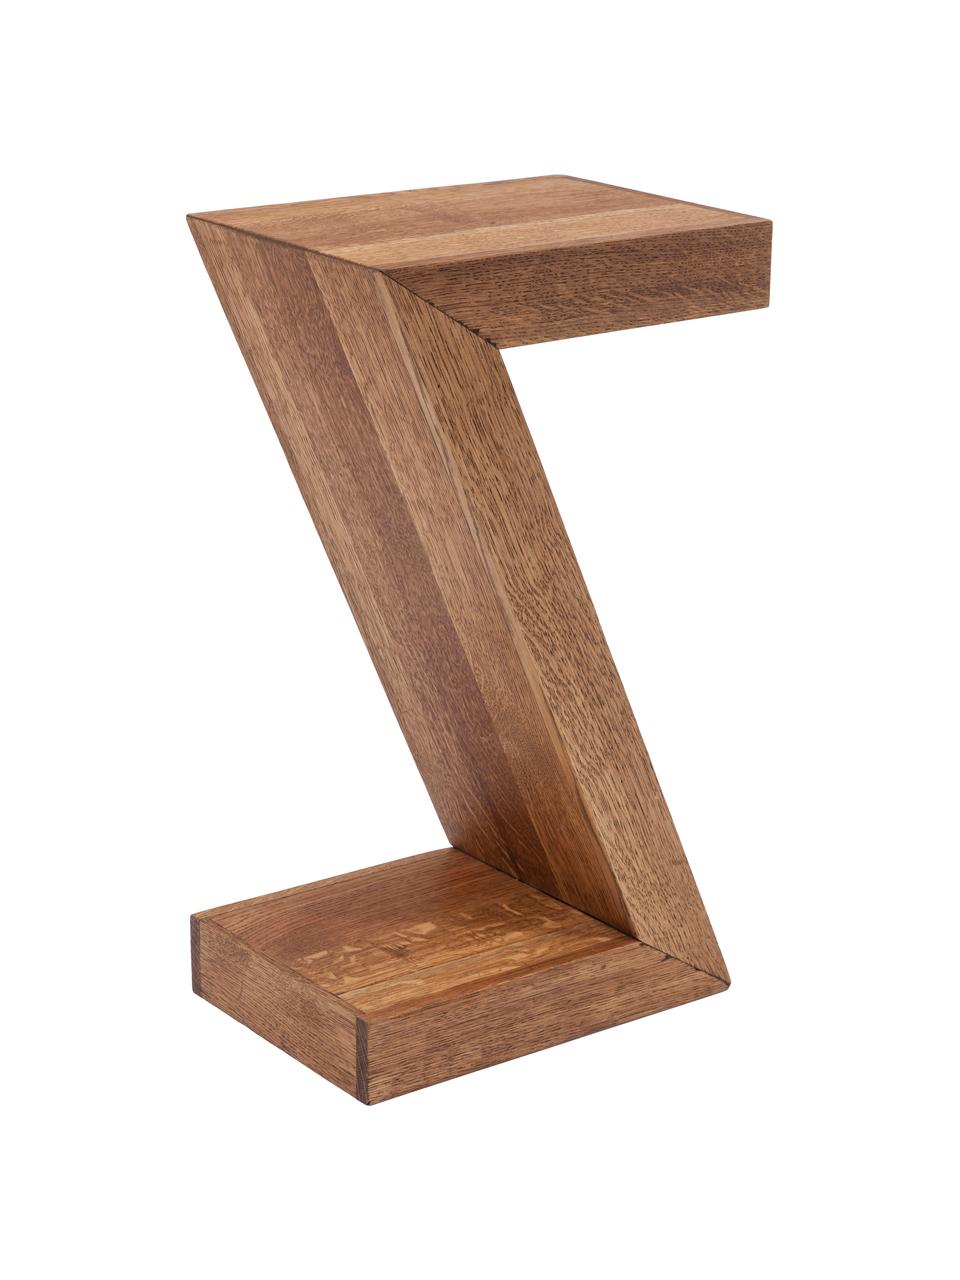 Tavolino in legno di quercia Attento, Legno di quercia, massiccio, oliato, Legno di quercia, Larg. 30 x Prof. 20 cm